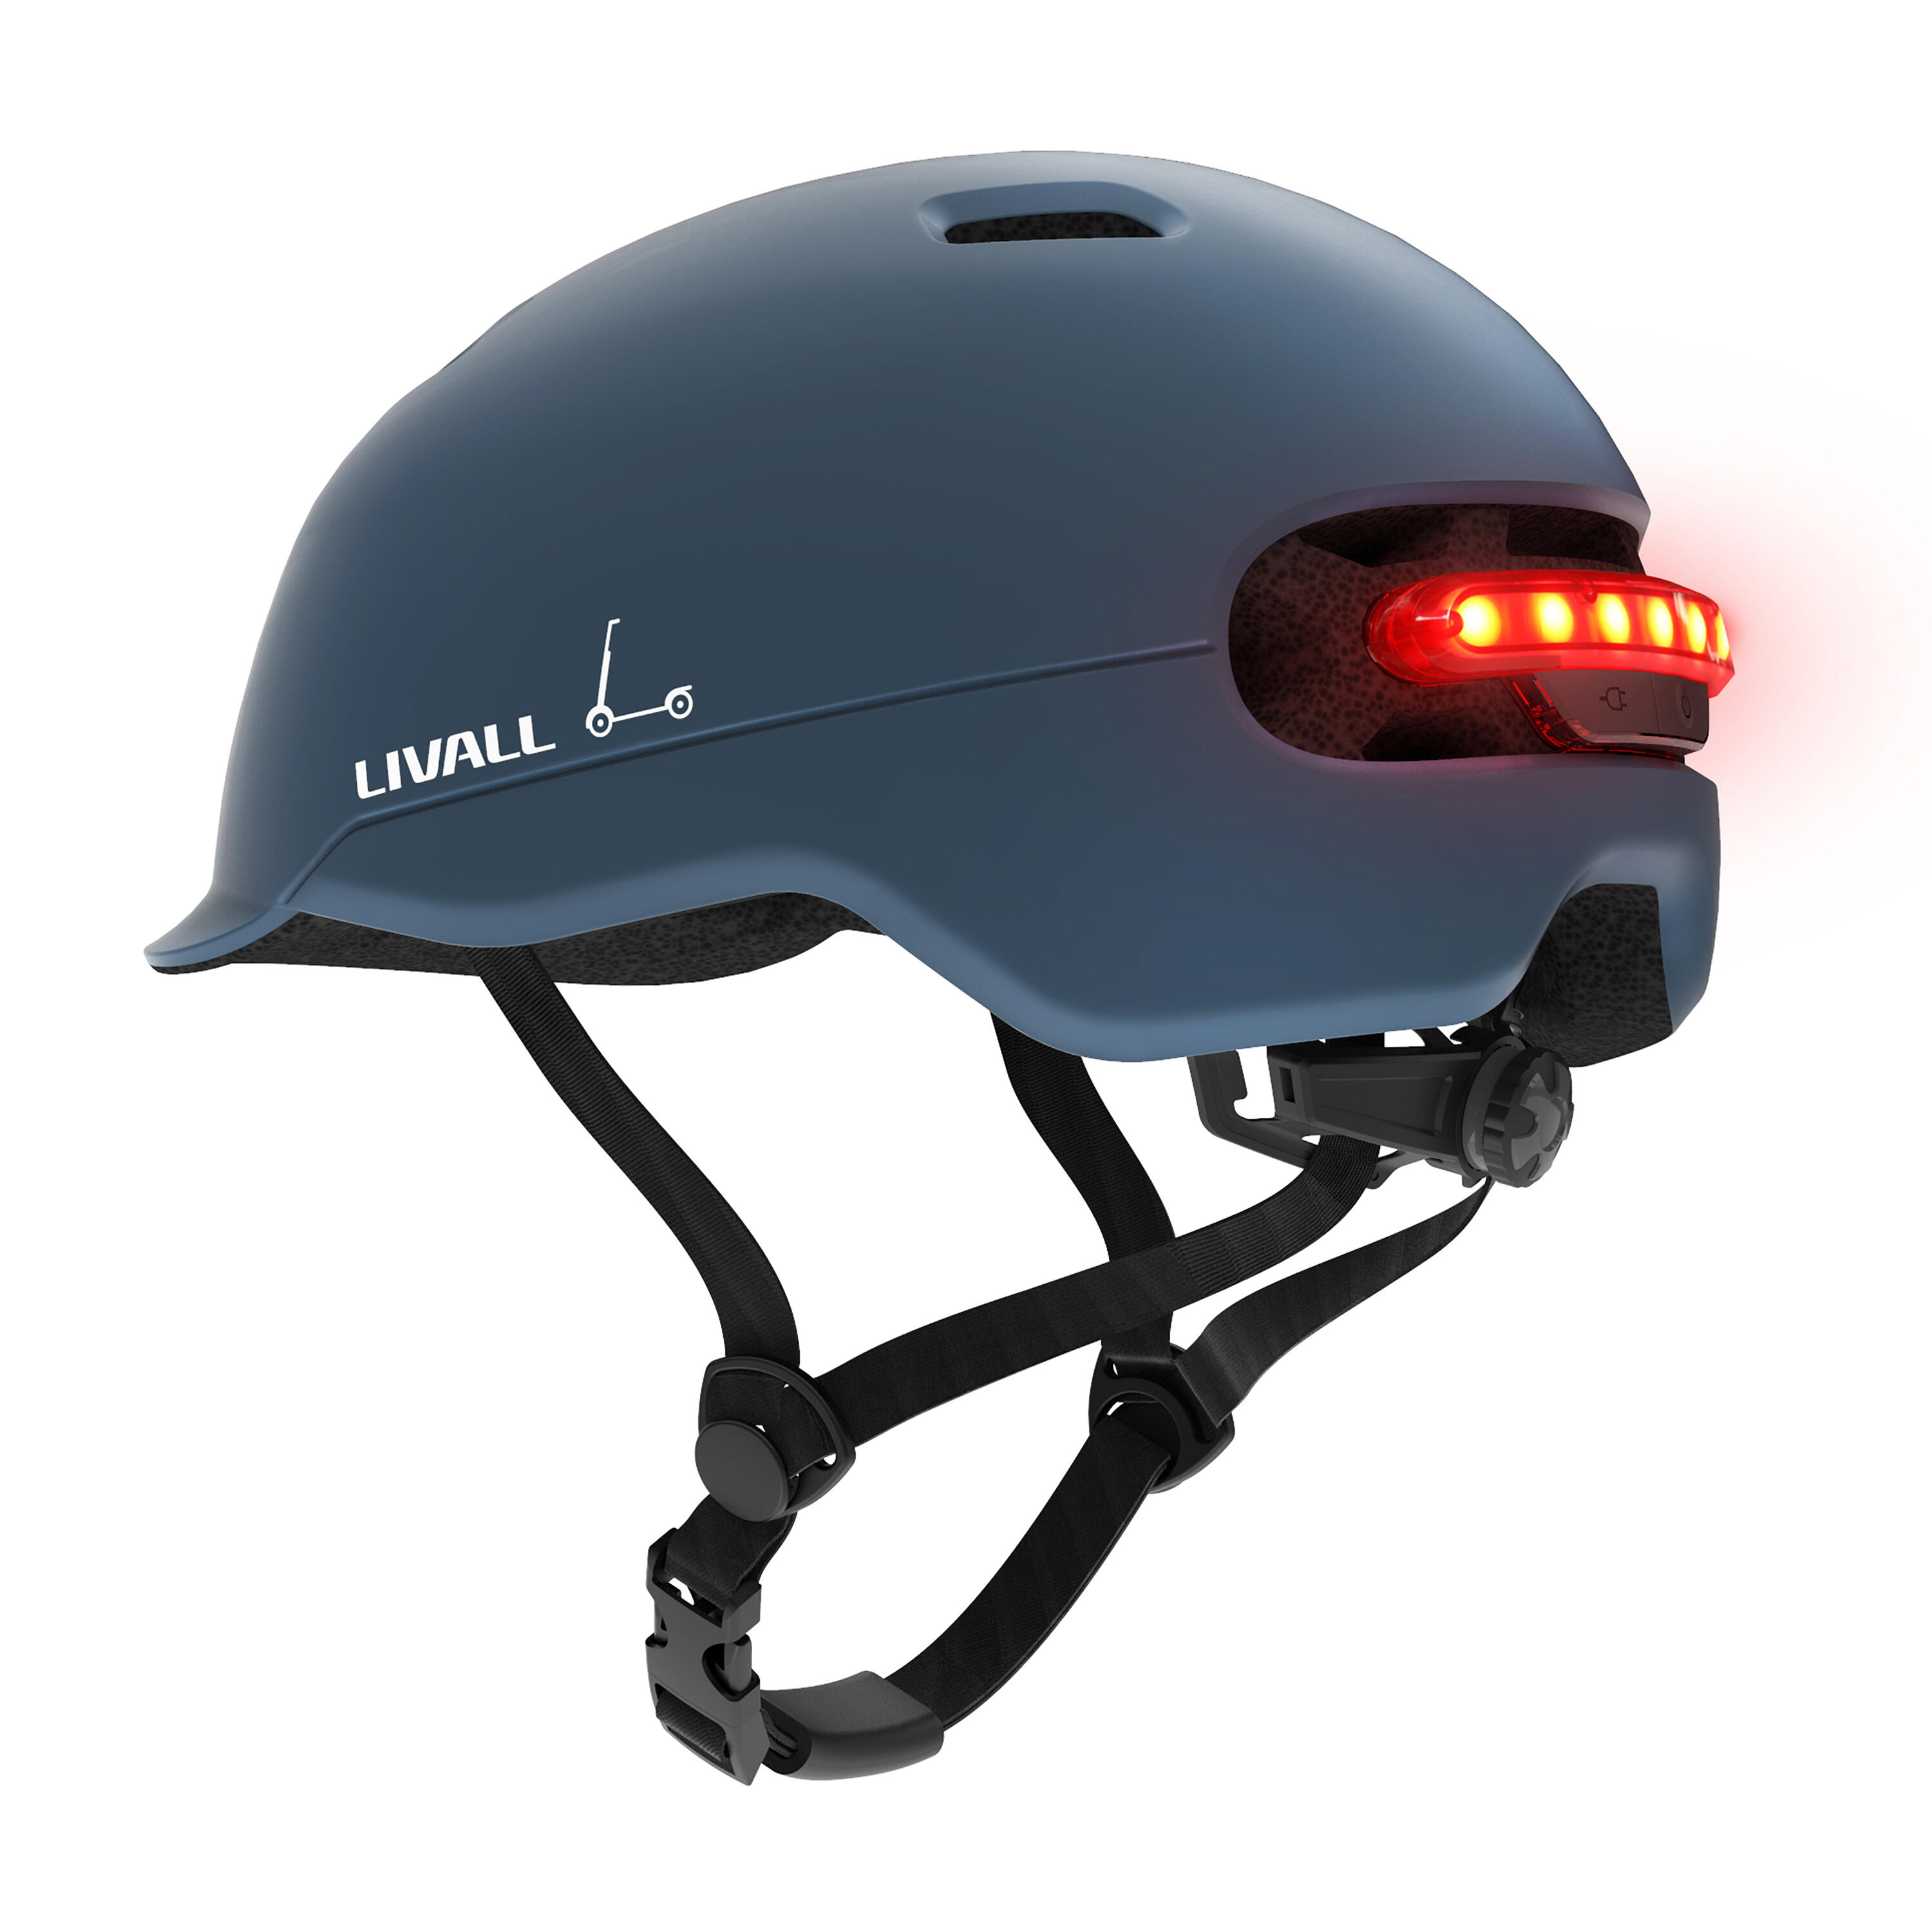 LIVALL Livall C20 Smart Urban Helmet